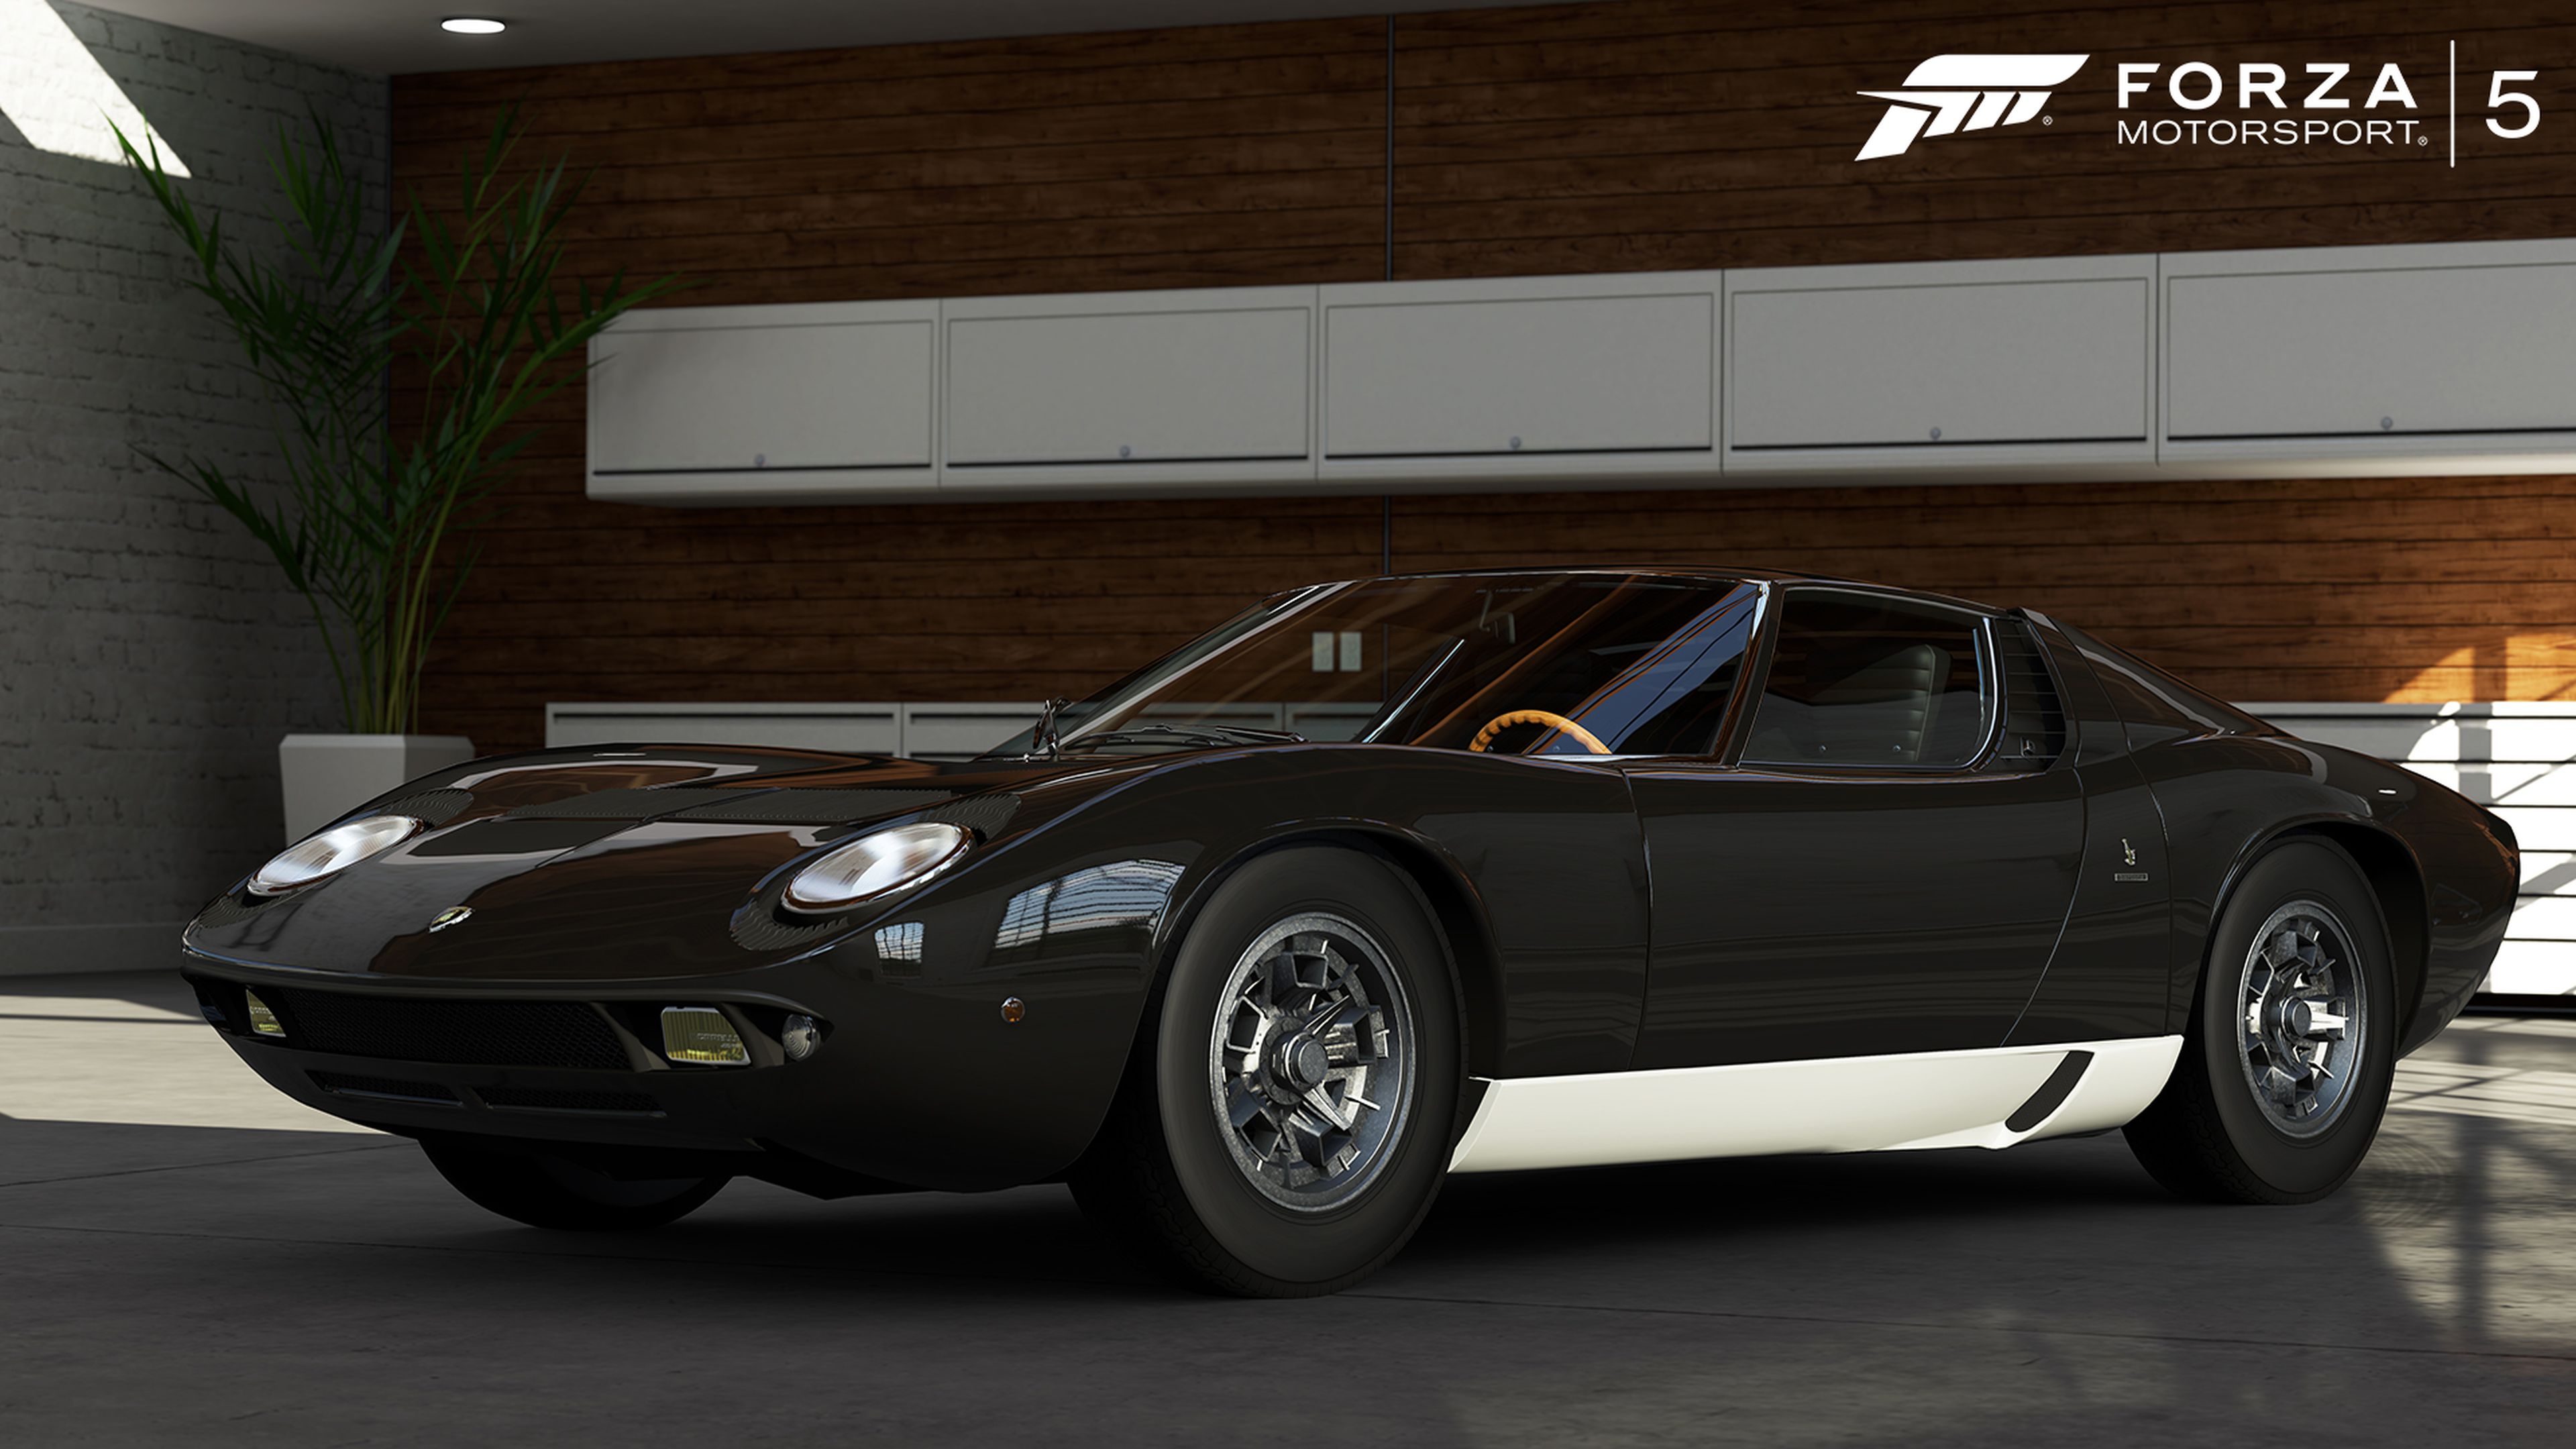 Forza Motorsport 5 revela cuatro nuevos coches